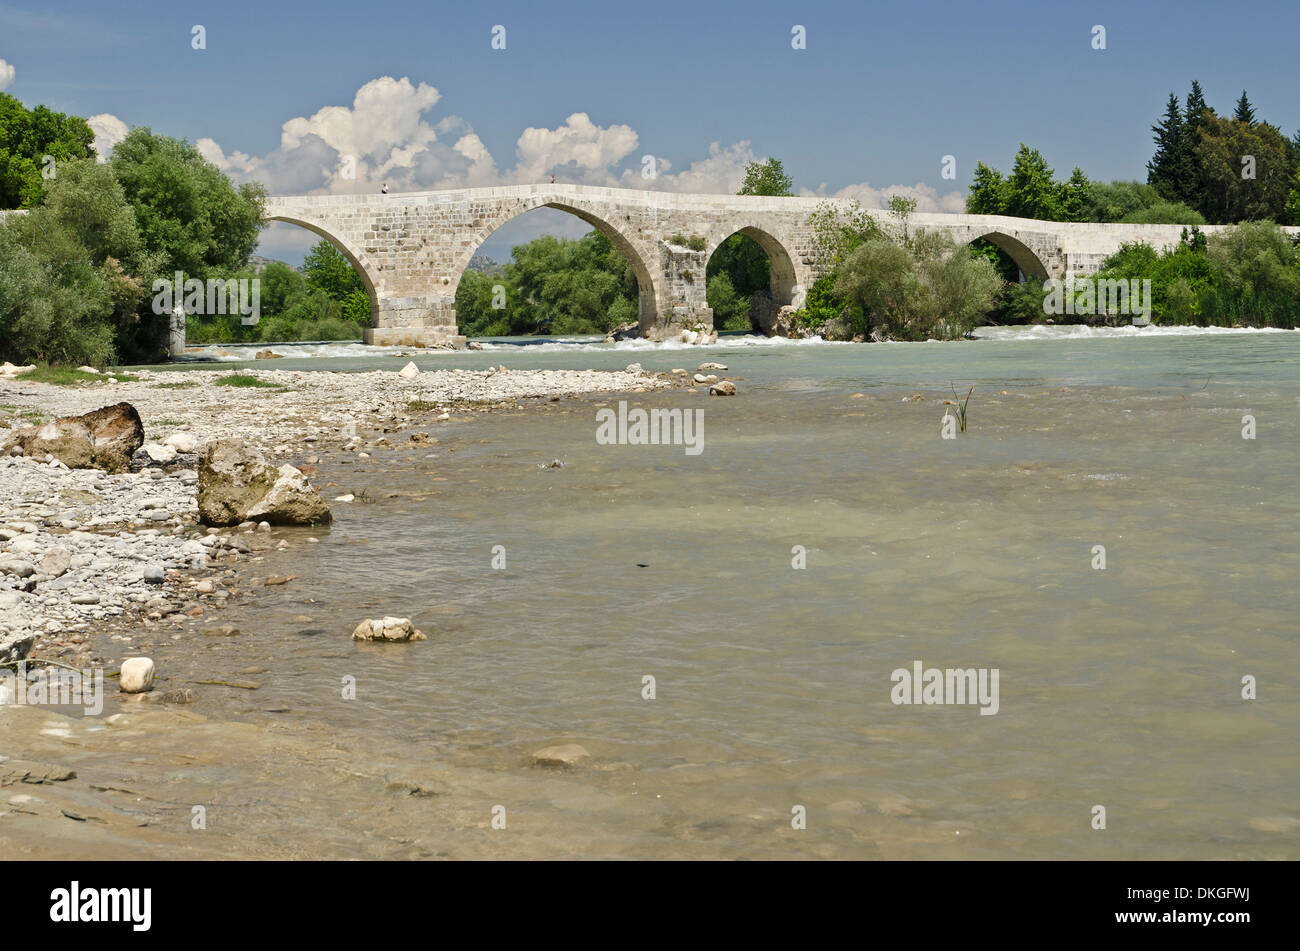 Eurymedon bridge, Aspendos, Mediterranean coast, Turkey, Asia Stock Photo